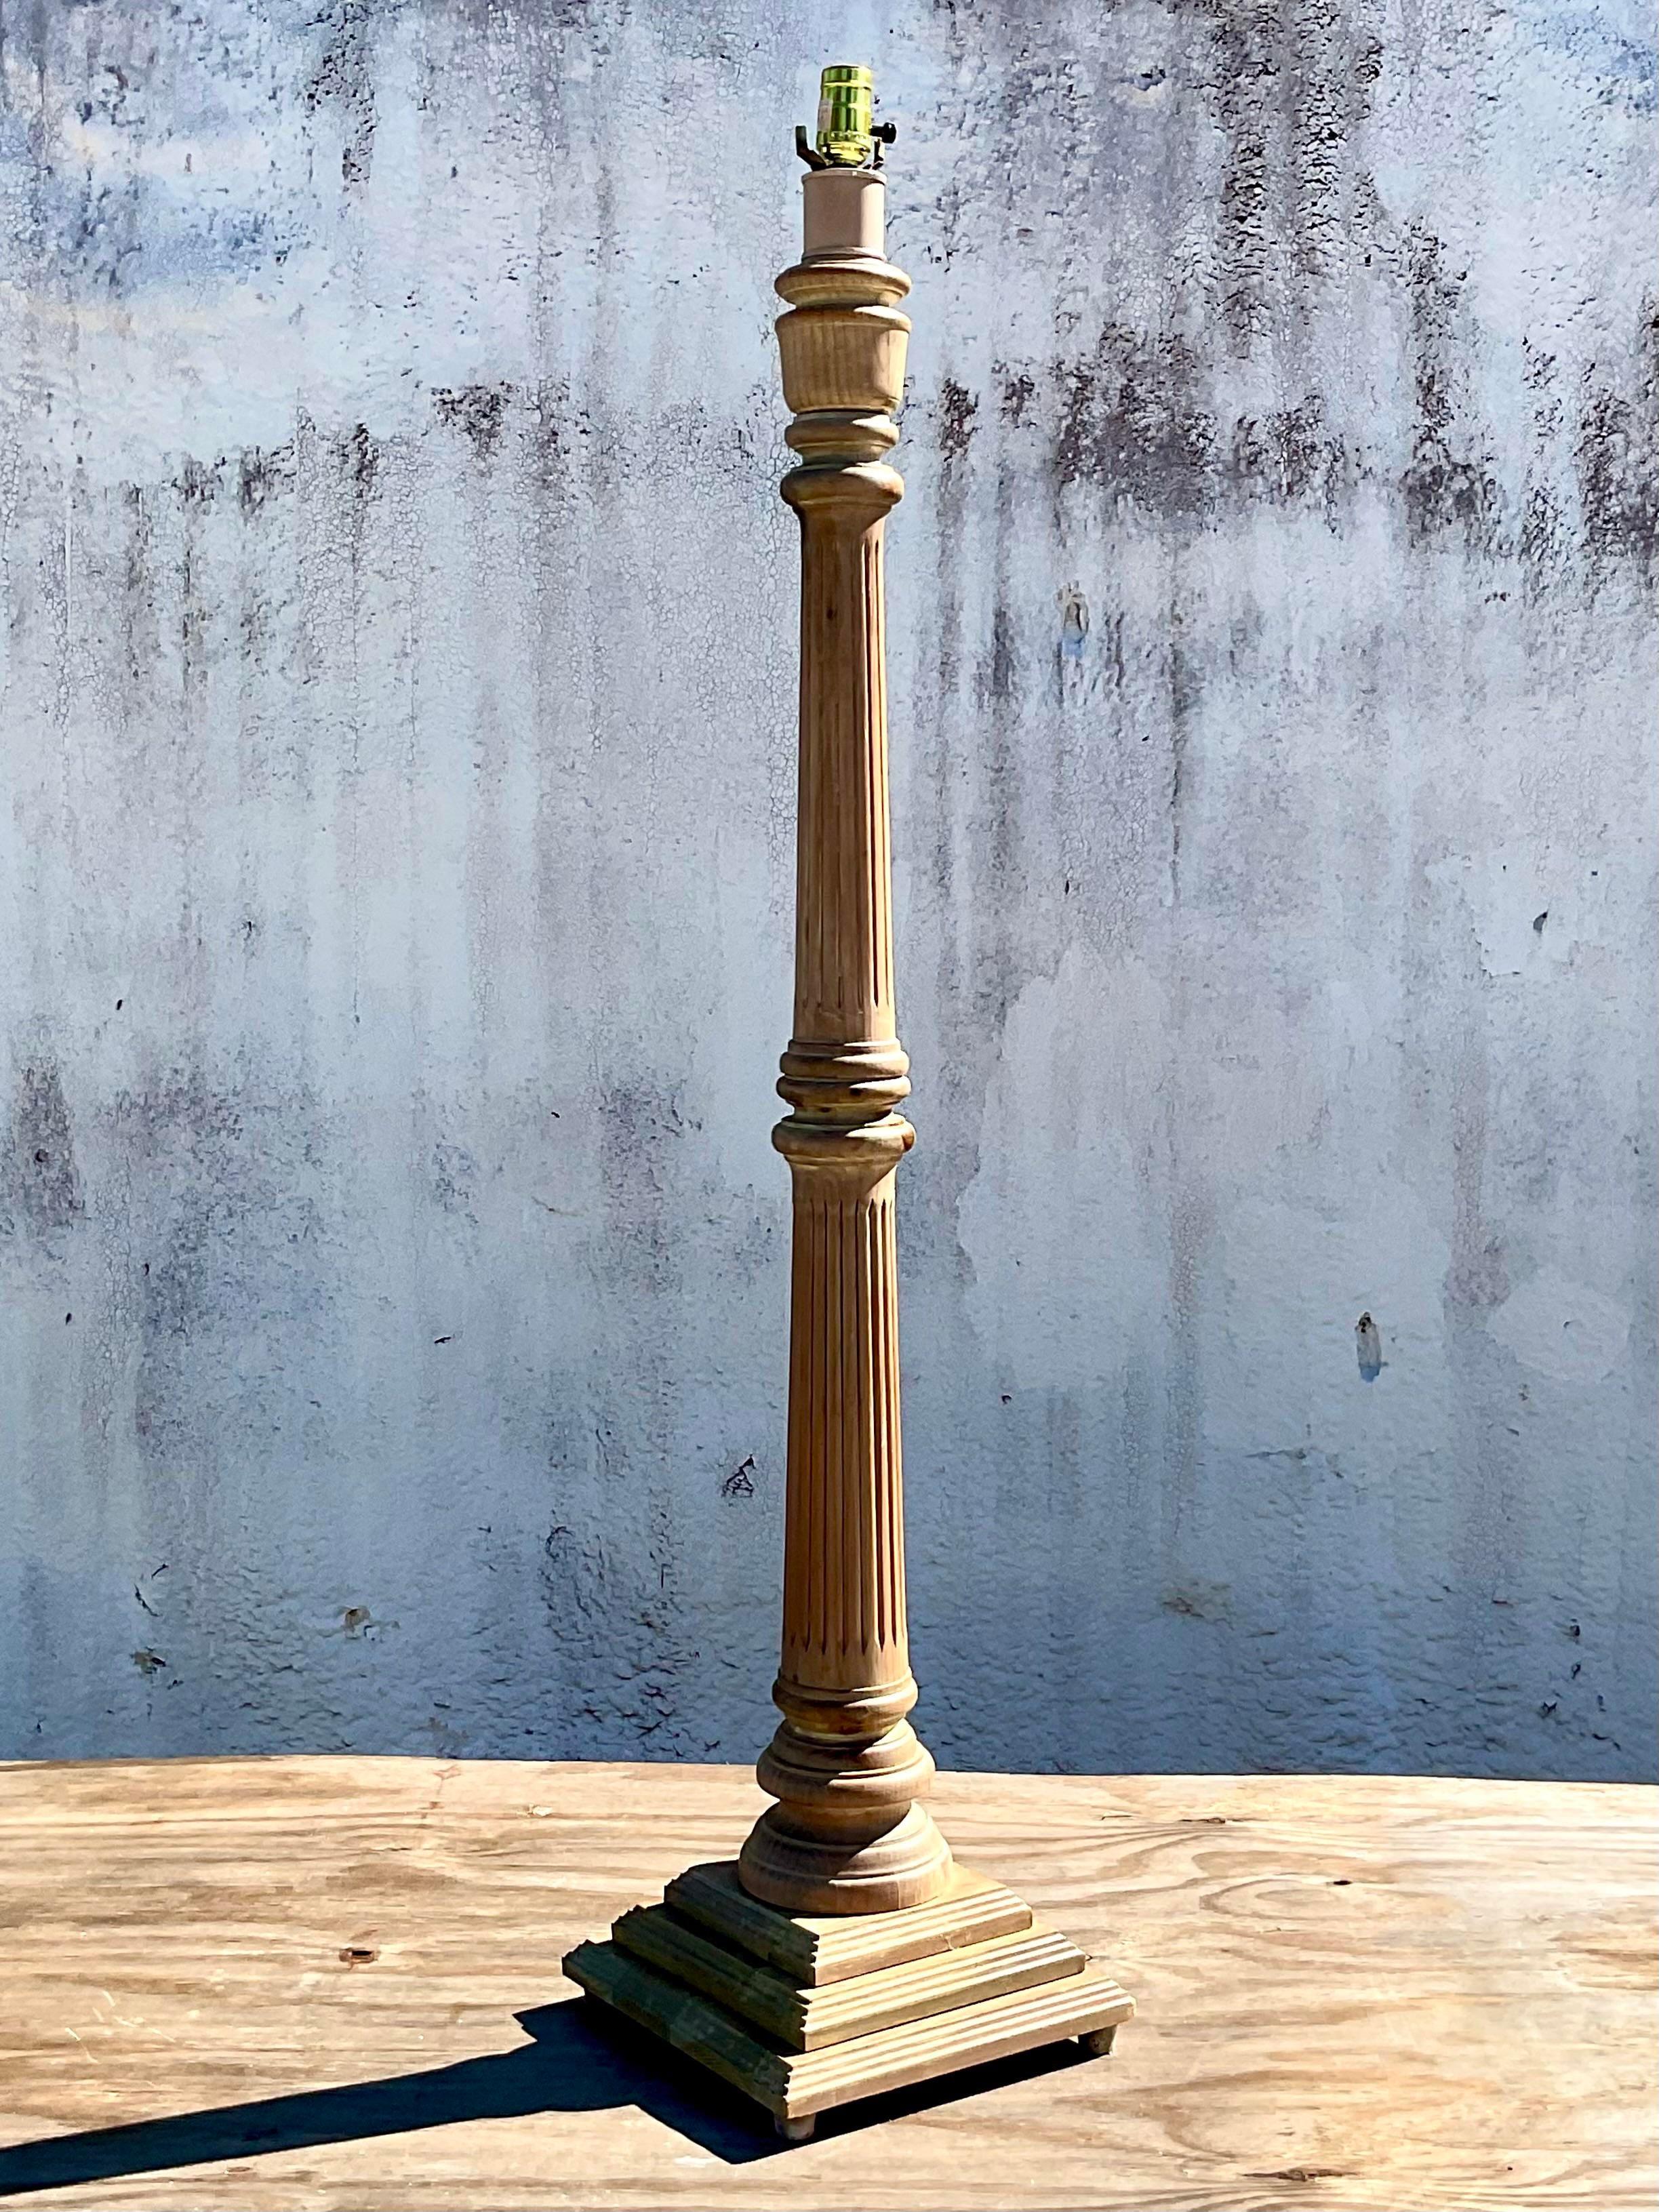 Fantastische handgeschnitzte Vintage-Stehlampe. Schickes Säulendesign in gekalkter Eiche. Erworben aus einem Nachlass in Palm Beach.